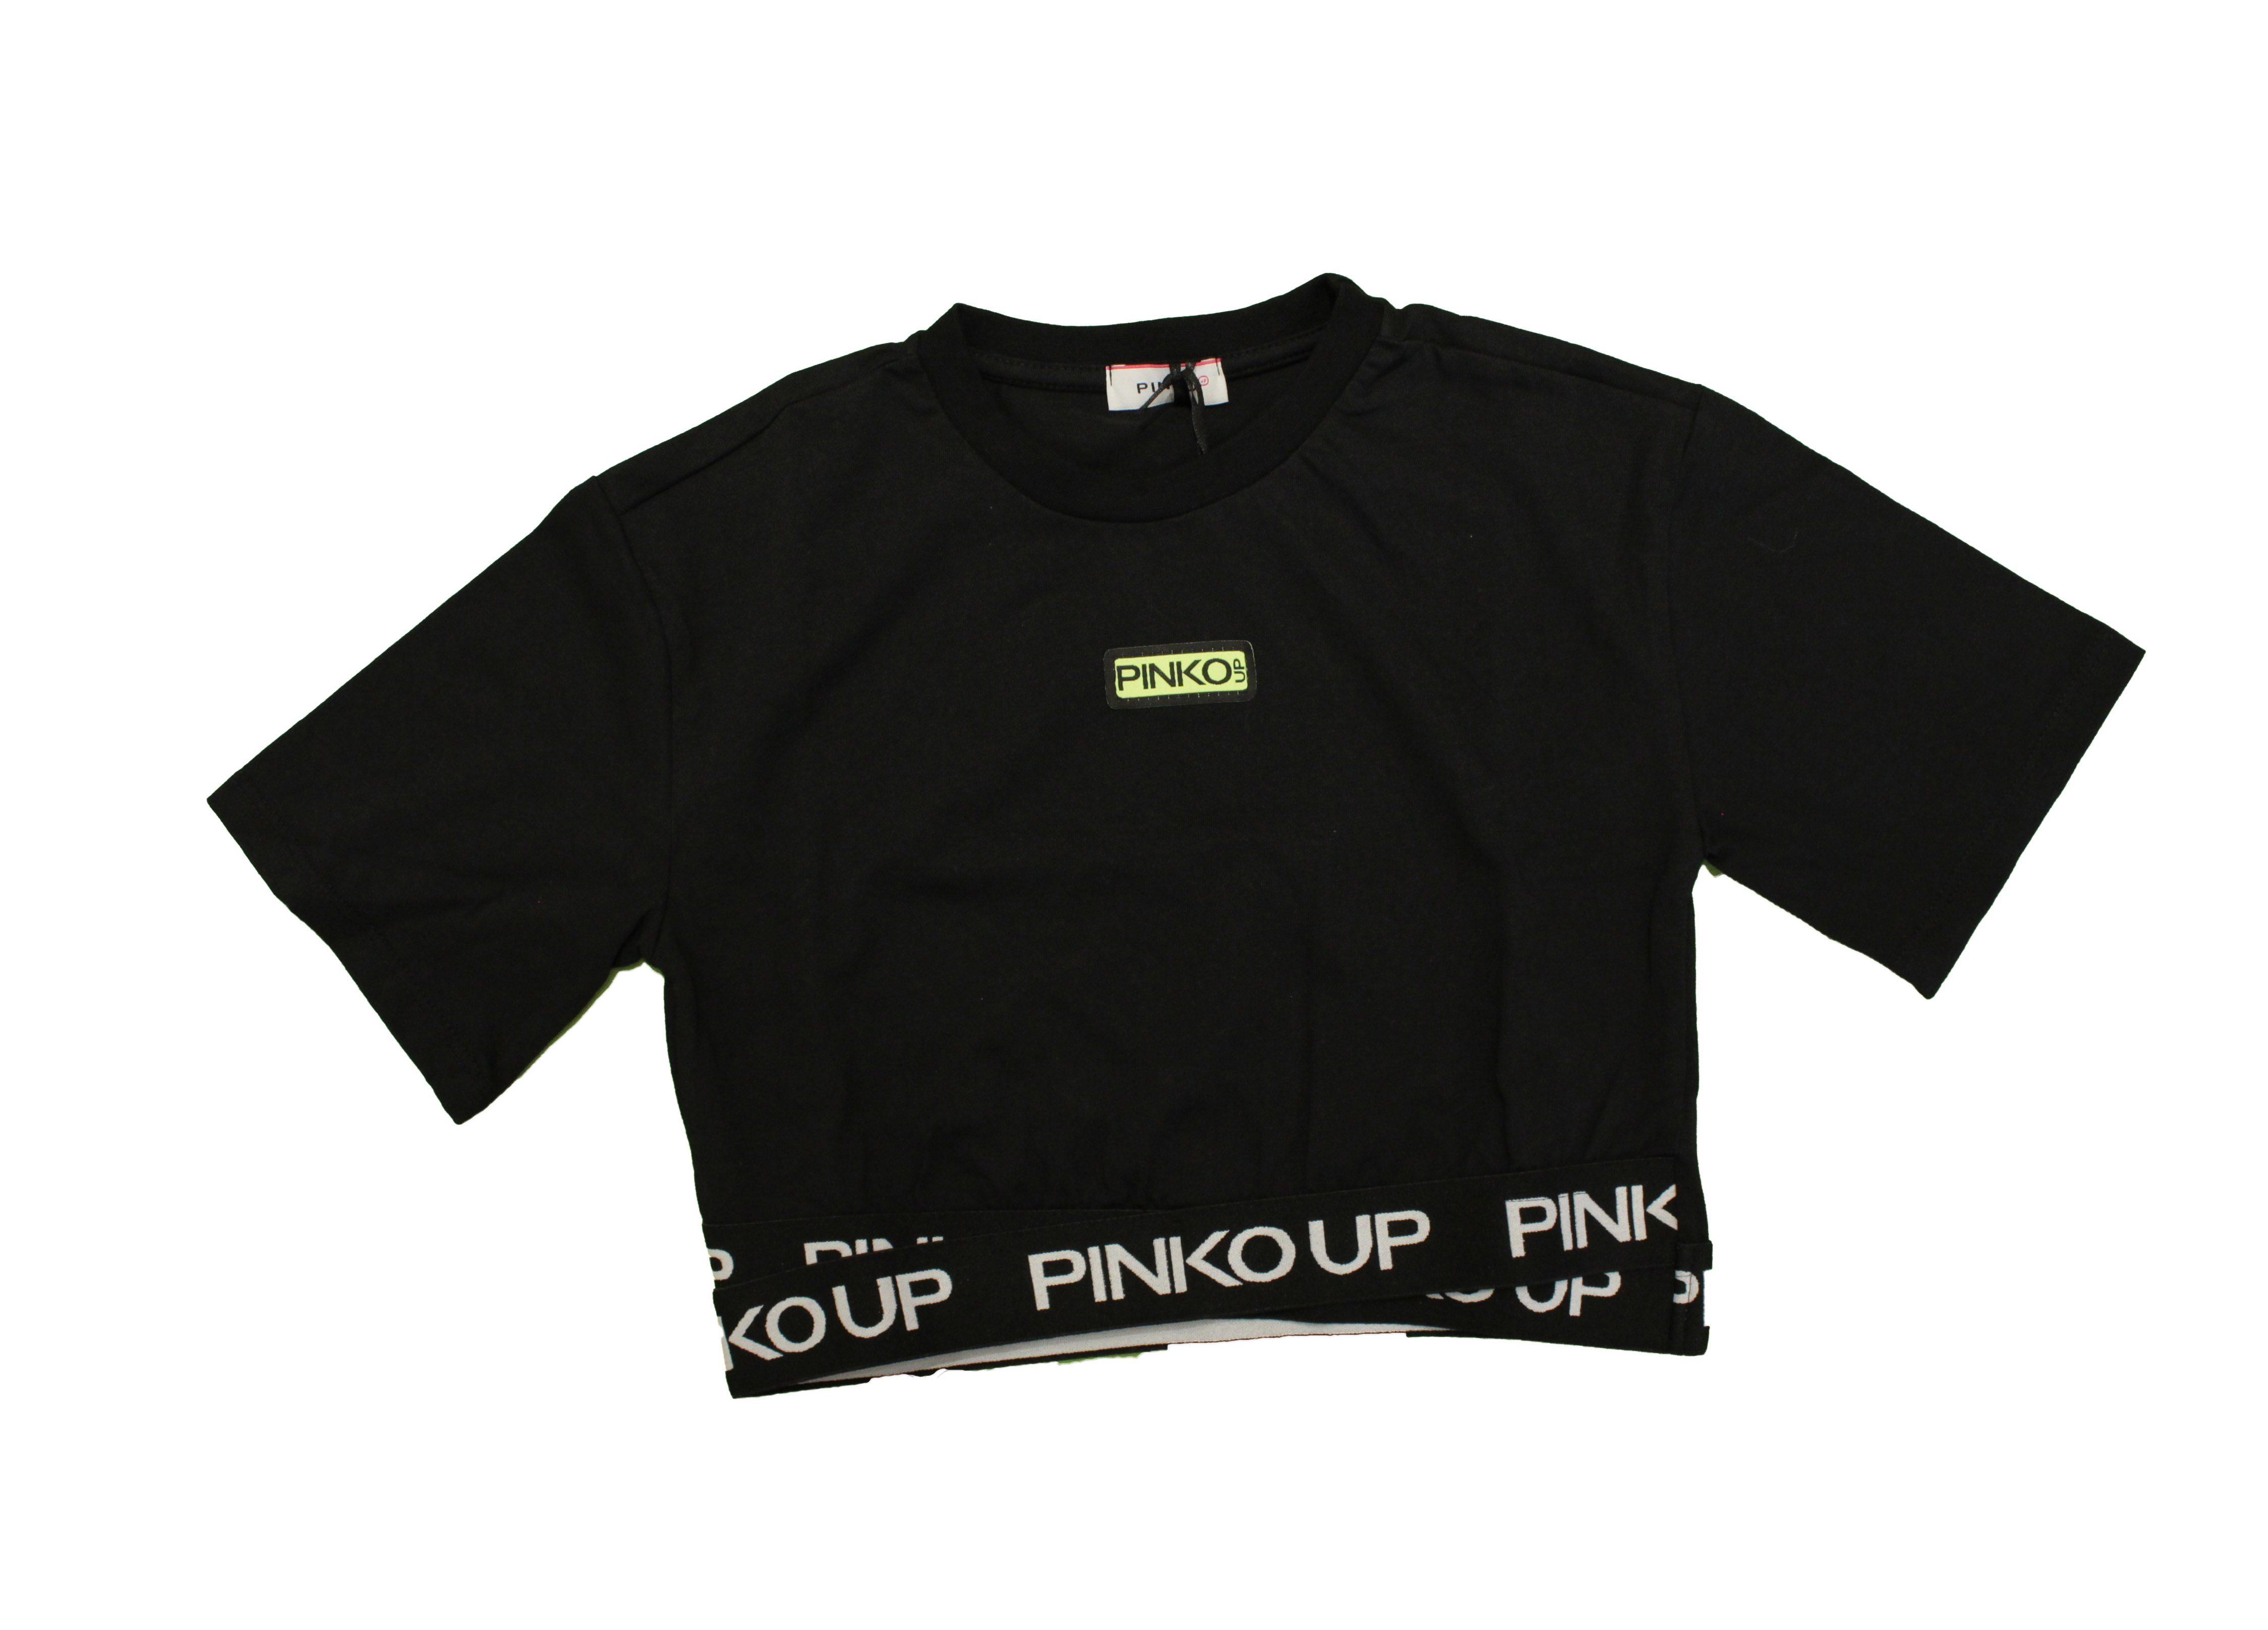 T-shirt Pinko